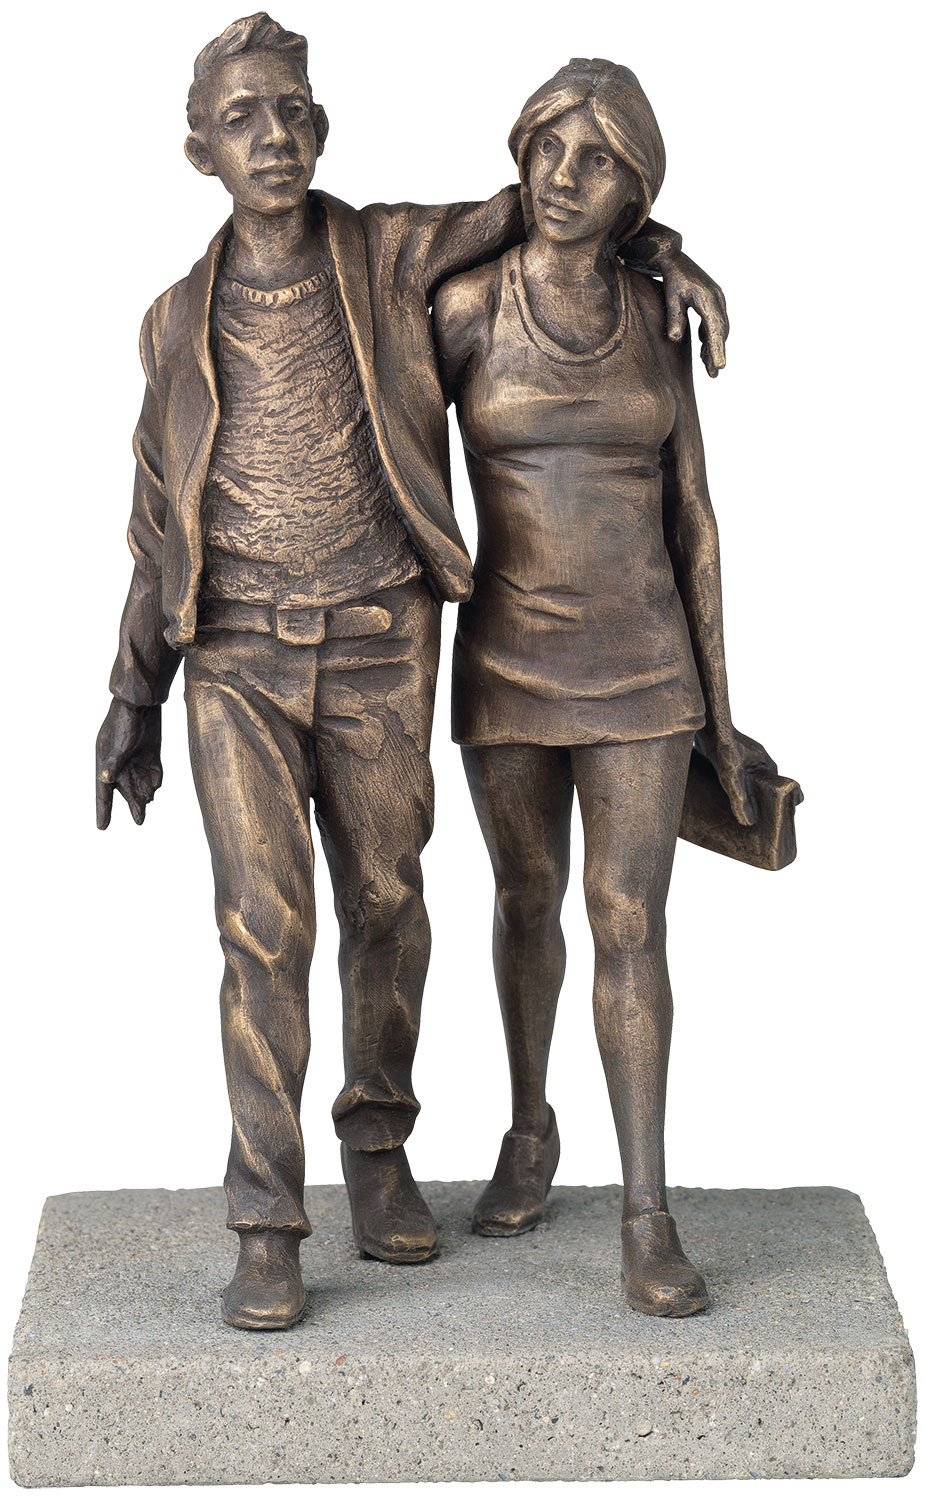 Sculpture "Modern Life" (2021), bronze by Leo Wirth